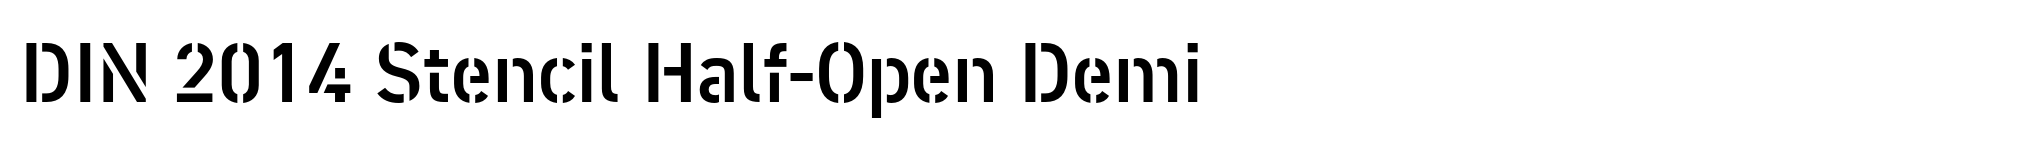 DIN 2014 Stencil Half-Open Demi image